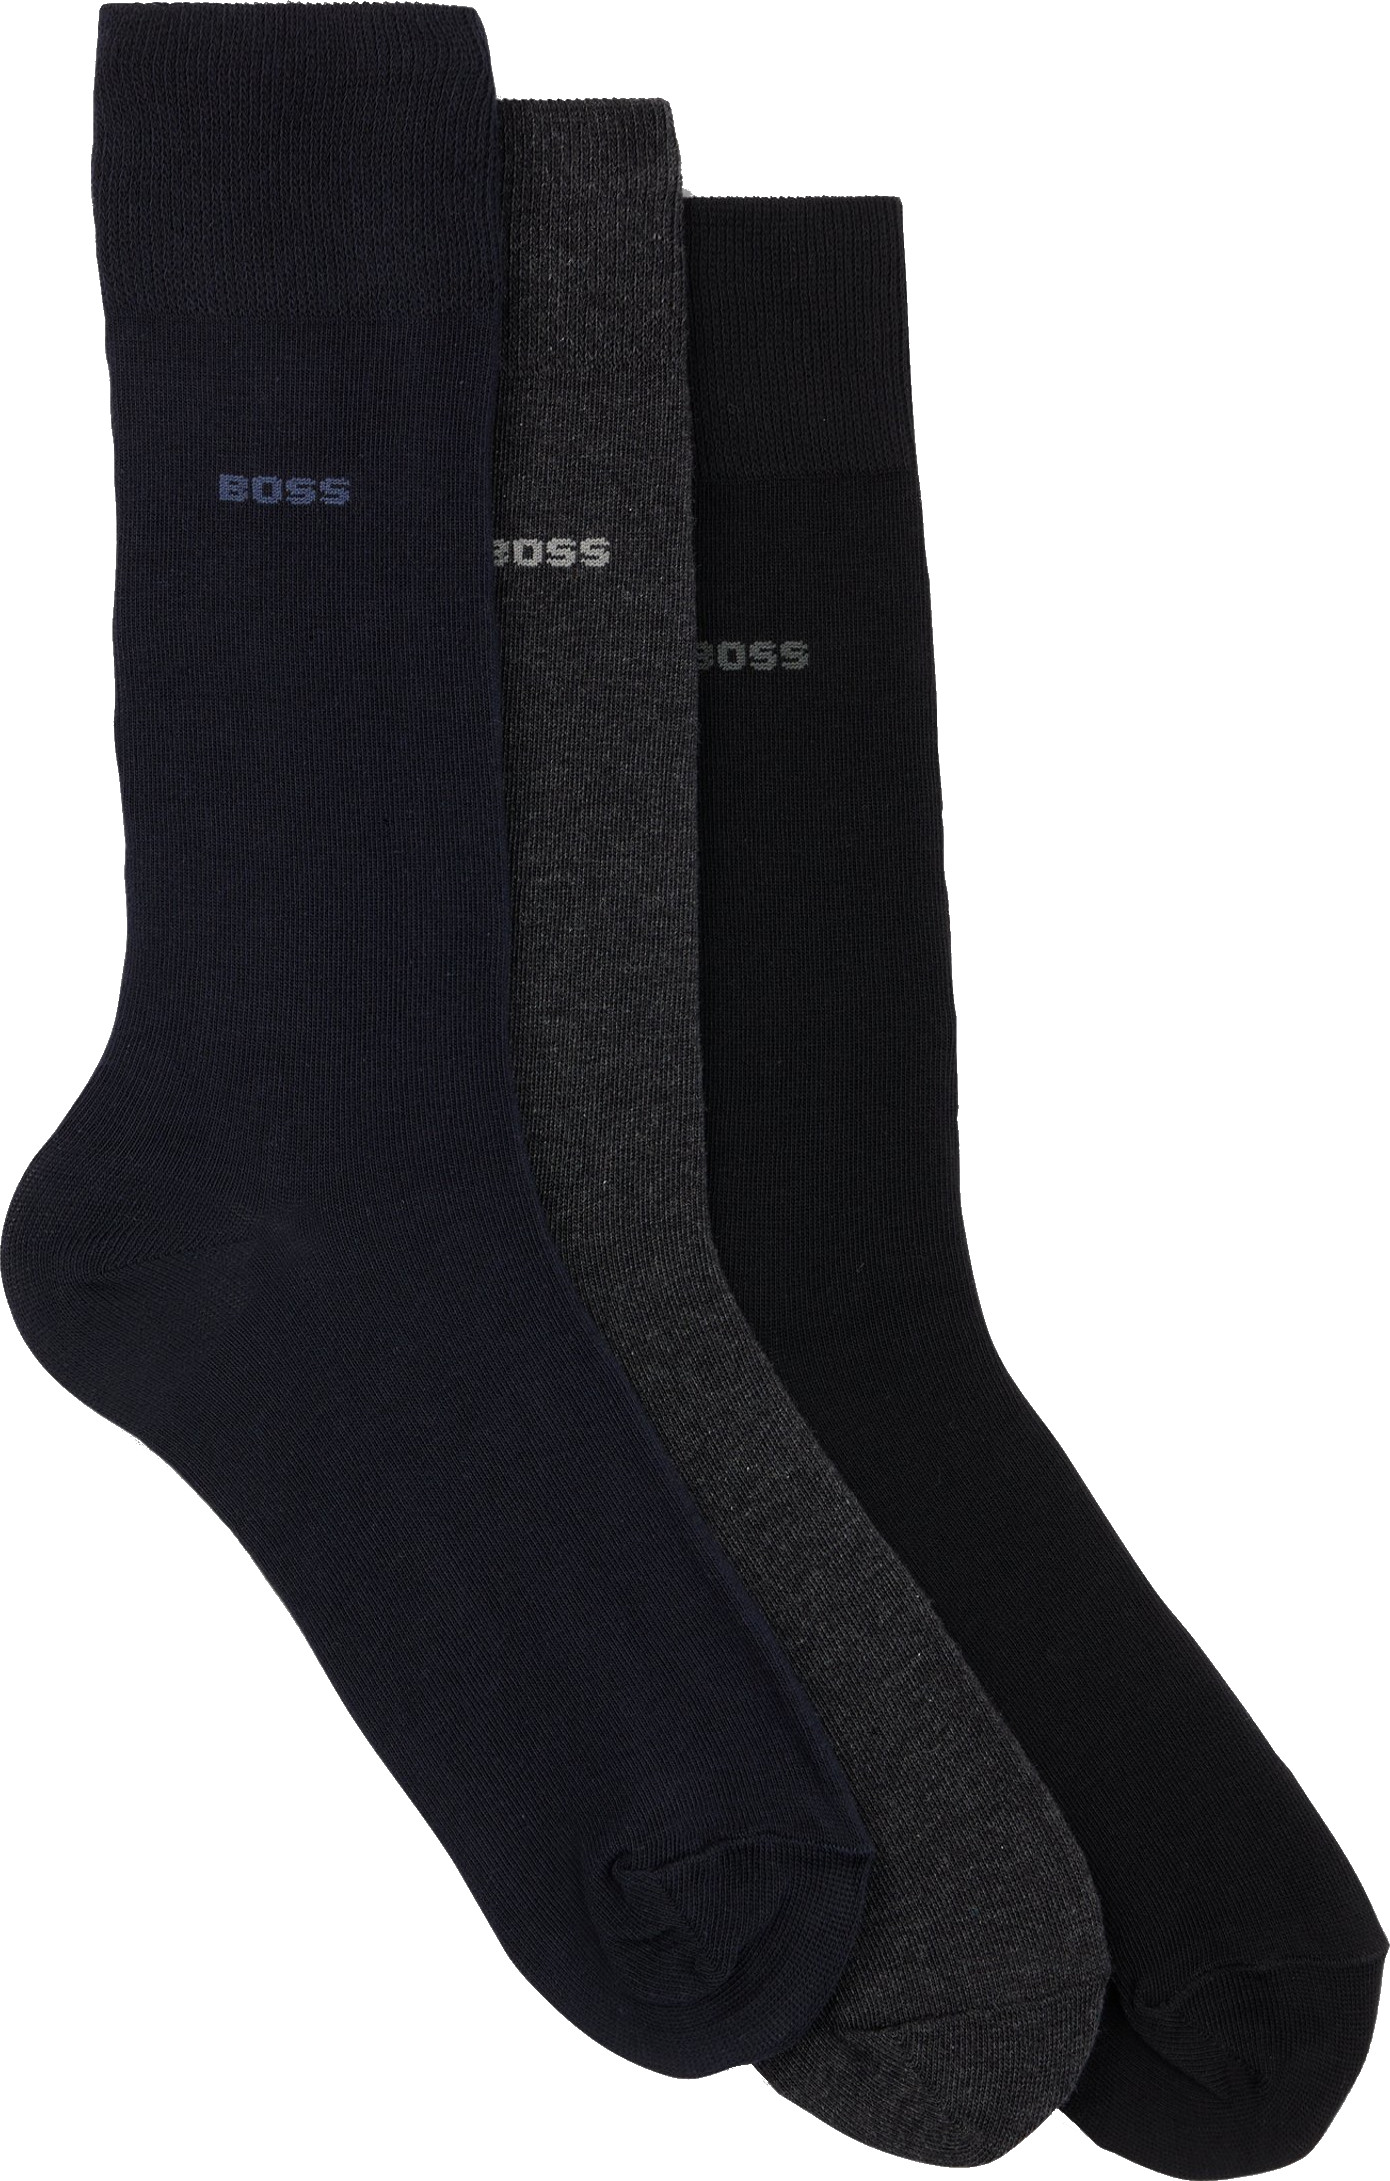 Levně Hugo Boss 3 PACK - pánské ponožky BOSS 50469839-961 43-46